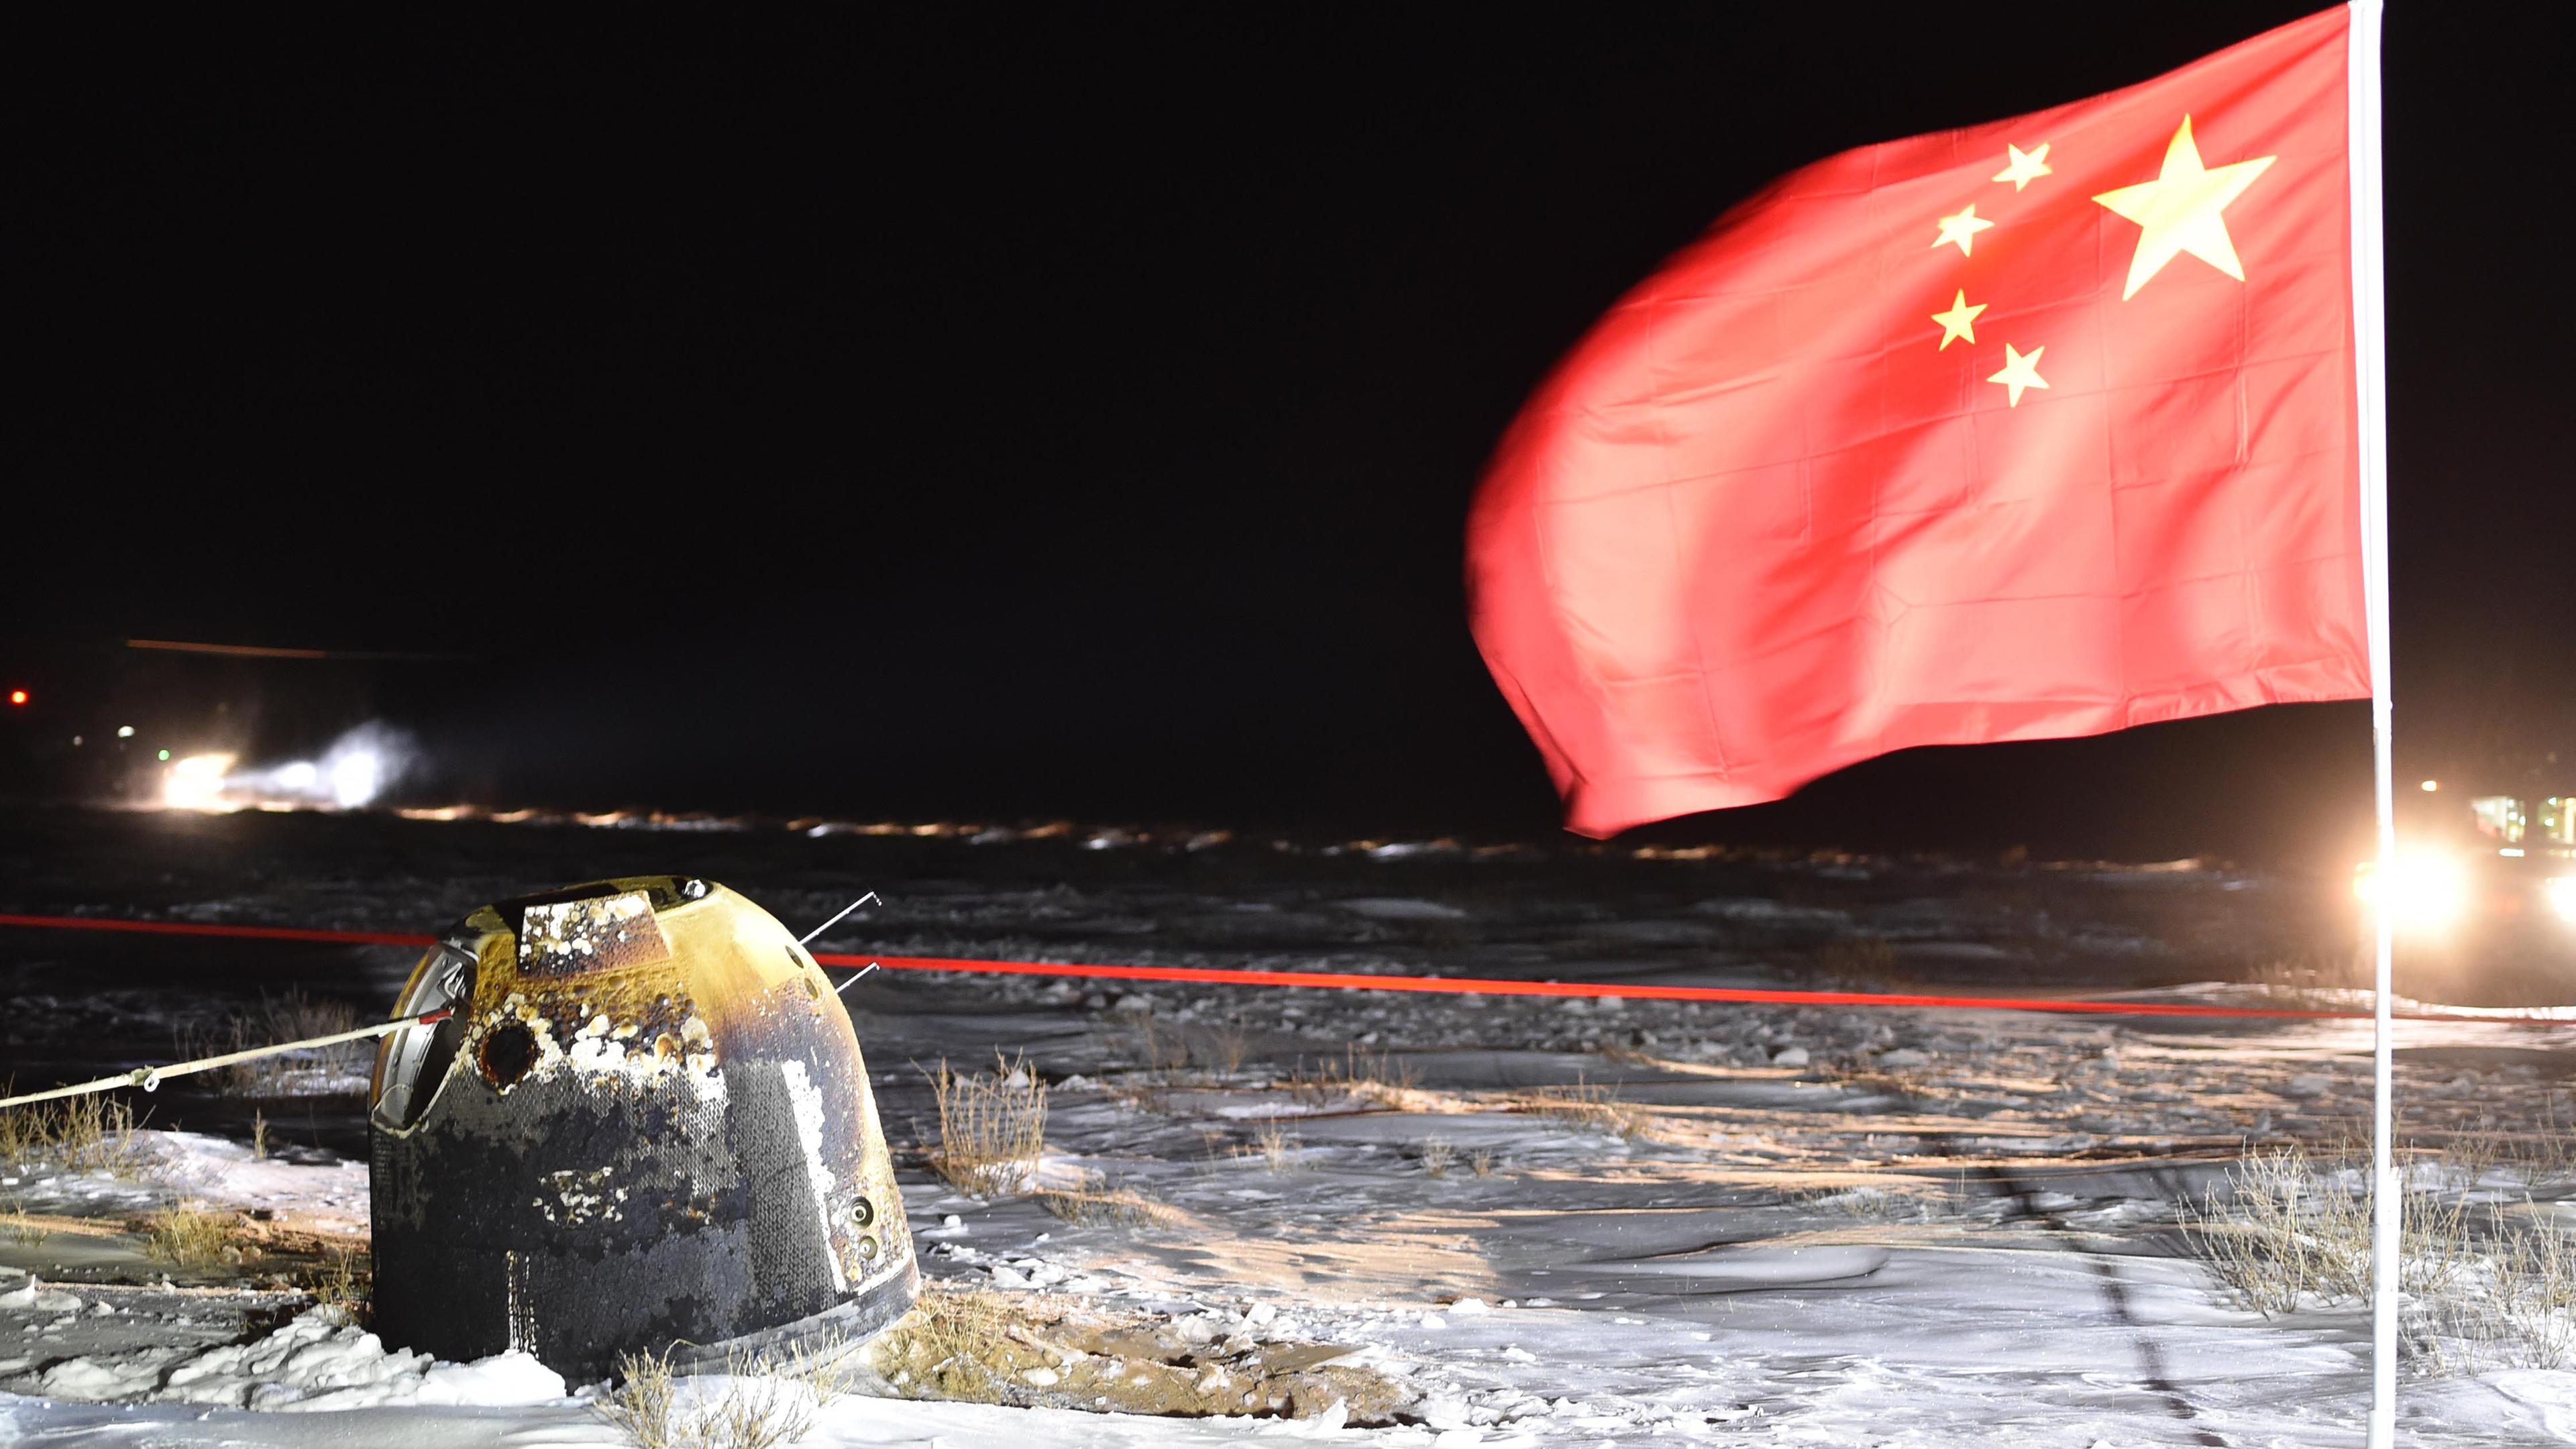 Auf dem Bild sieht man die Mondkapsel "Chang'e 5", die nach ihrer Mondmission mit Mondproben auf chinesischem Boden gelandet ist. Rechts daneben steckt eine chinesische Flagge im Boden. 